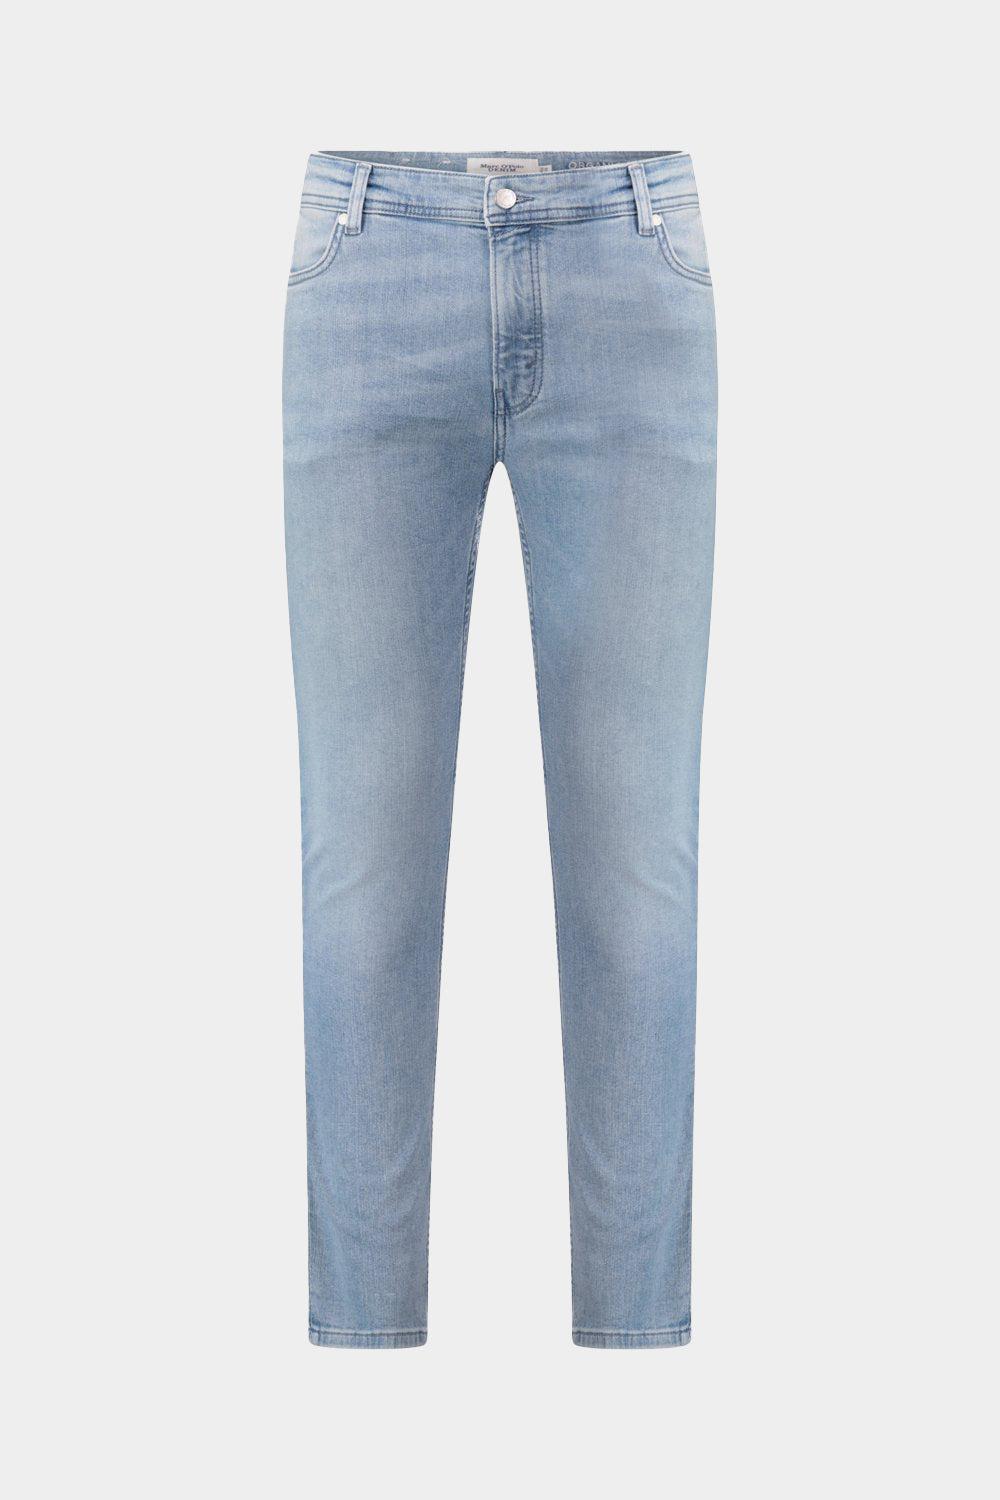 ג'ינס סקיני לגברים שפשוף בהיר MARC O'POLO Vendome online | ונדום .